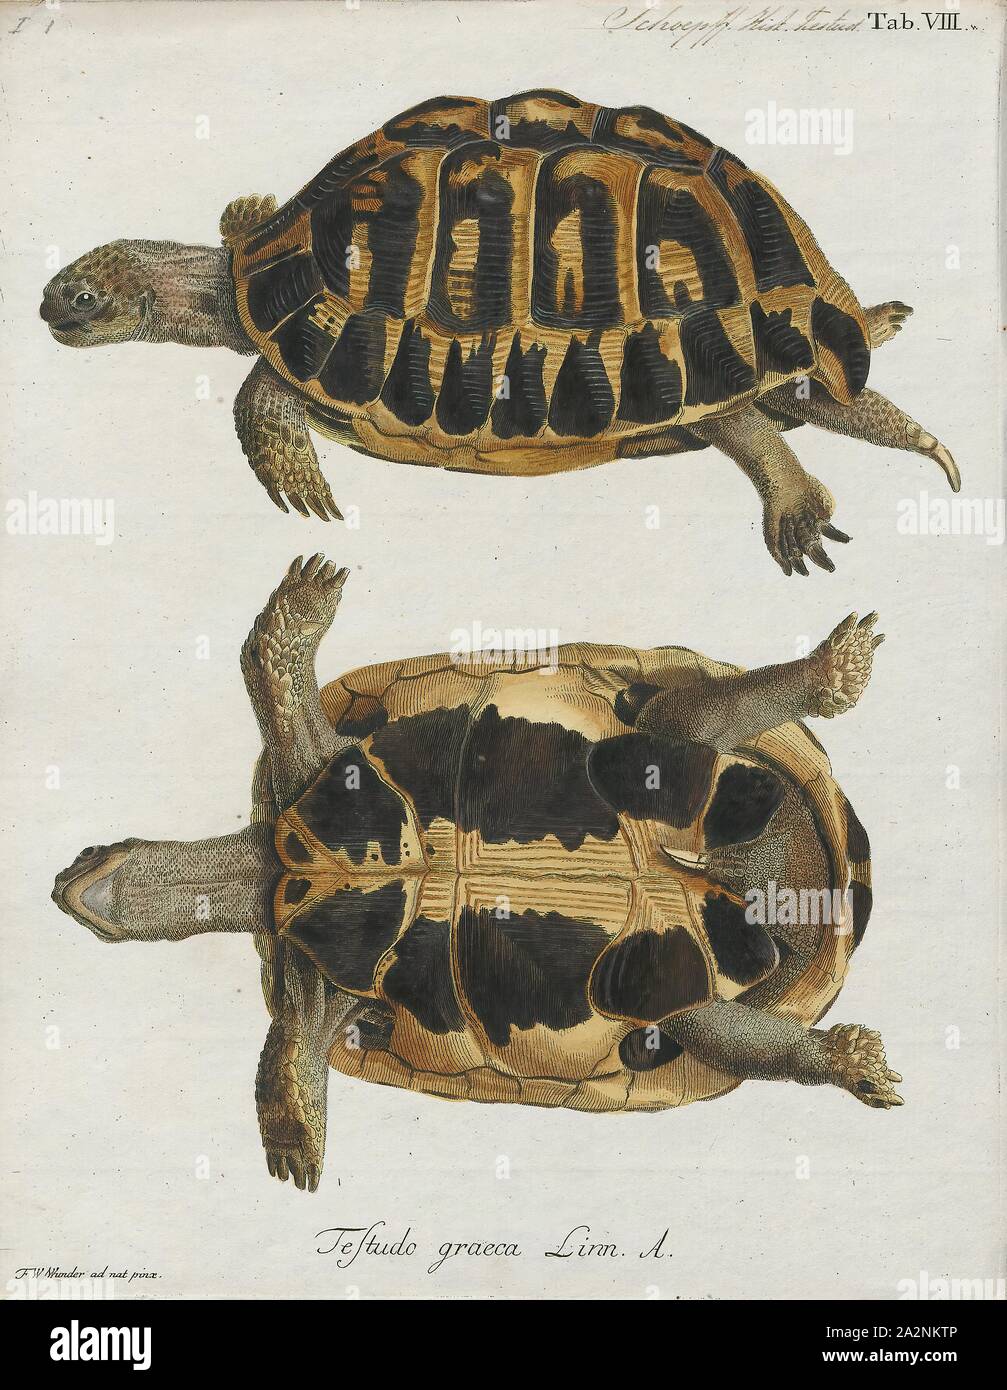 Testudo graeca, stampa la tartaruga greca (Testudo graeca), anche conosciuto comunemente come lo sperone-thighed tartaruga, è una specie di tartaruga in famiglia Testudinidae. Testudo graeca è una delle cinque specie di tartarughe del Mediterraneo (generi Testudo e Agrionemys). Le altre quattro specie sono Hermann's tartaruga (Testudo hermanni), la tartaruga egiziana (Testudo kleinmanni), la Testuggine marginata (Testudo marginata) e il russo tartaruga (Agrionemys horsfieldii). La tartaruga greca è molto lunga vita animale, il raggiungimento di una durata di vita di verso l'alto di 125 anni, con alcuni rapporti non verificati fino a Foto Stock